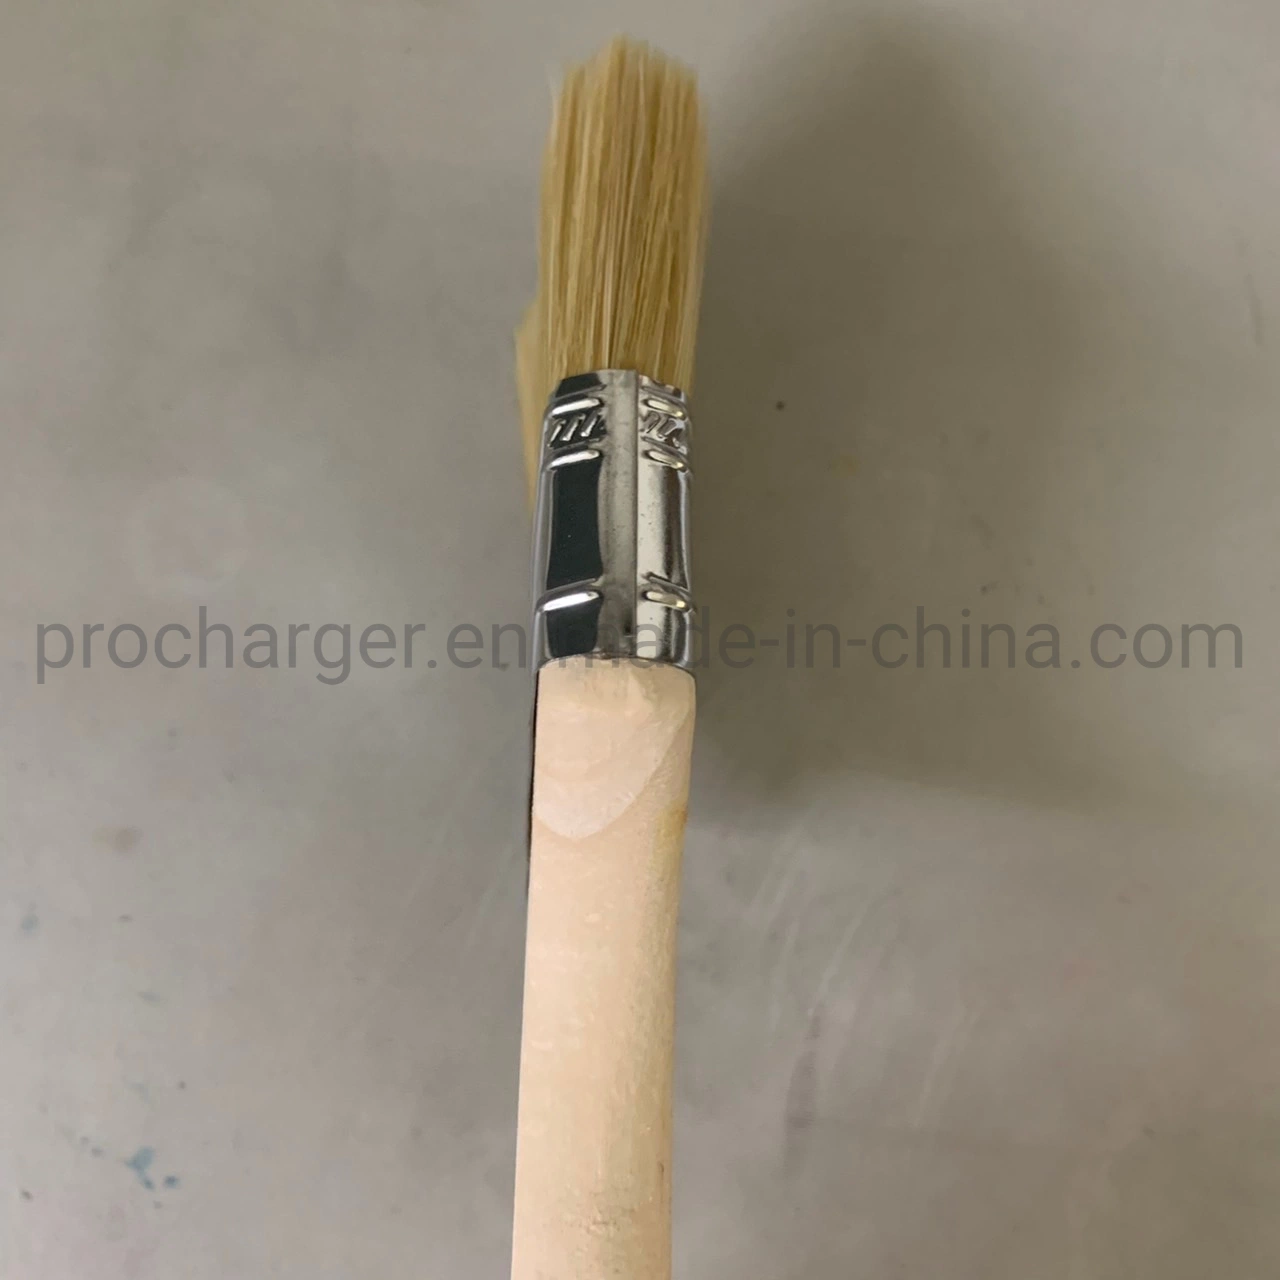 #300 ProCharger gute Qualität flache Pinsel mit Holzgriff